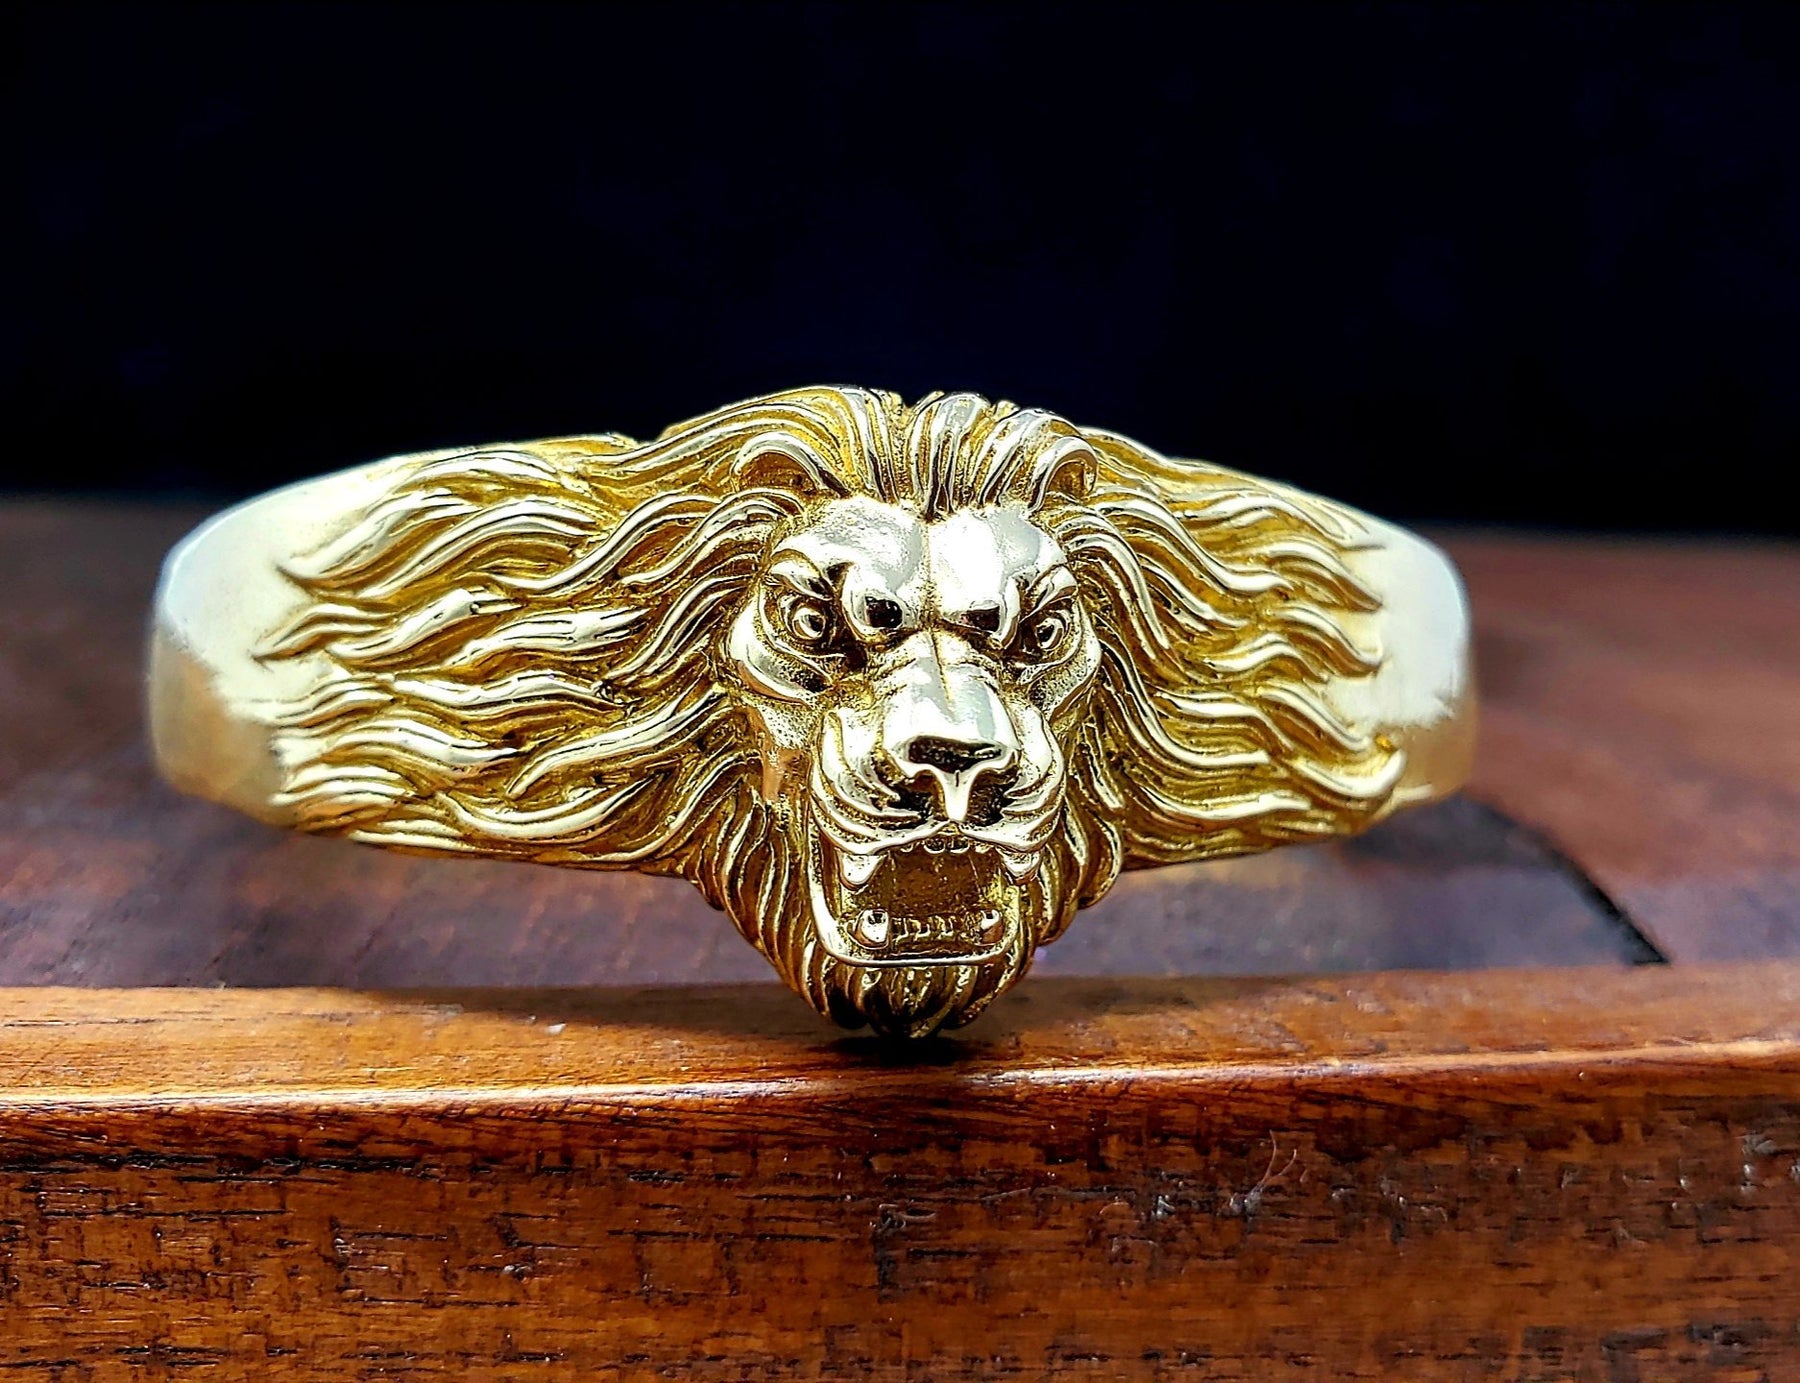 Roaring Lion Engraved Oxidised Gold Finish Men's Bracelet: Gift/Send  Jewellery Gifts Online J11125281 |IGP.com